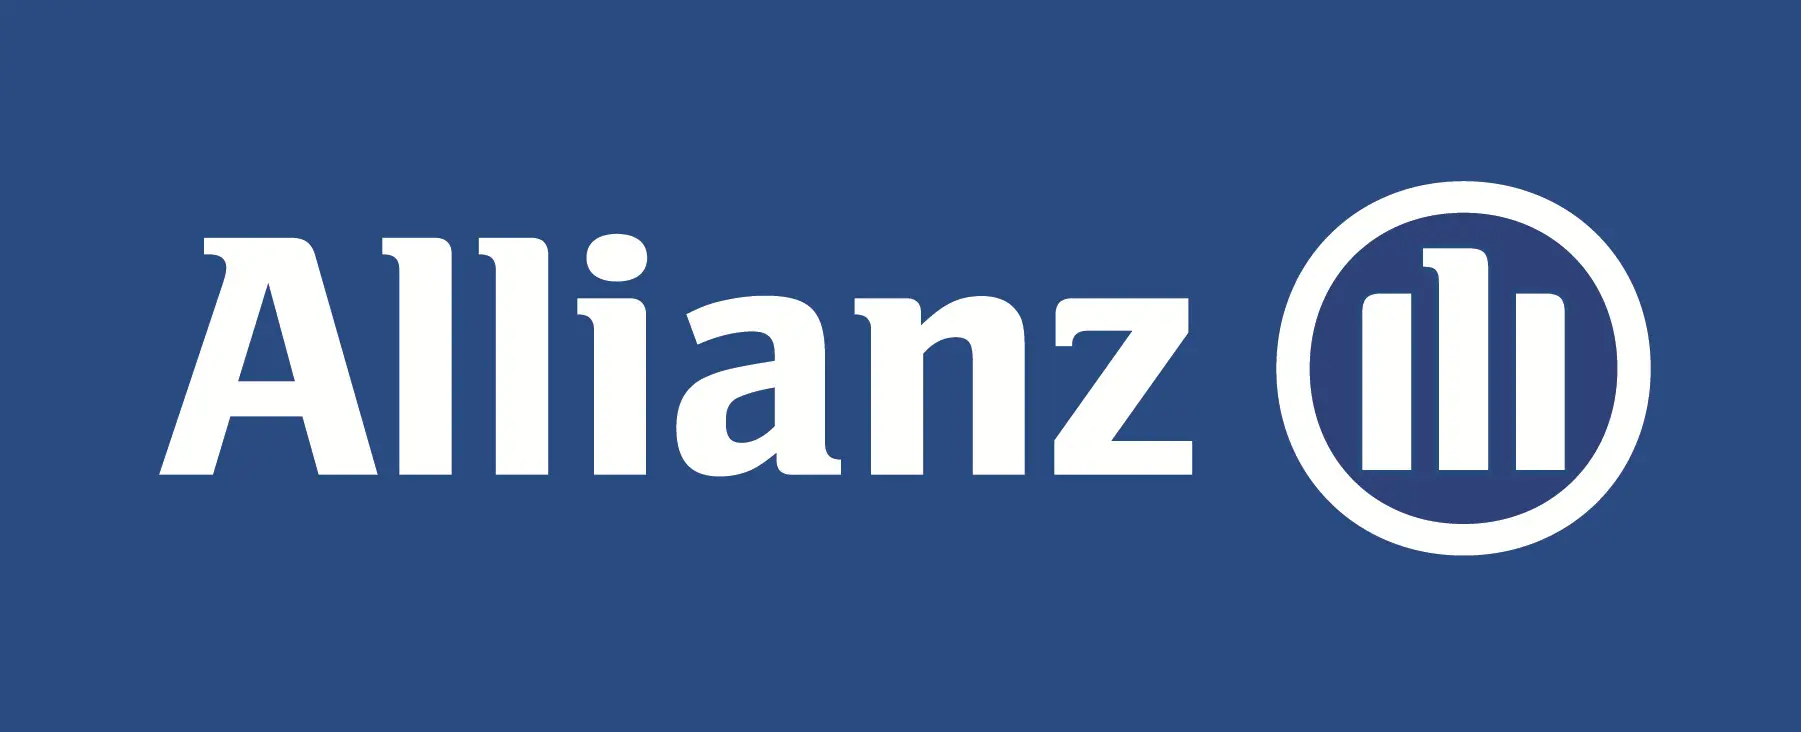 plombier agréé assurance Allianz